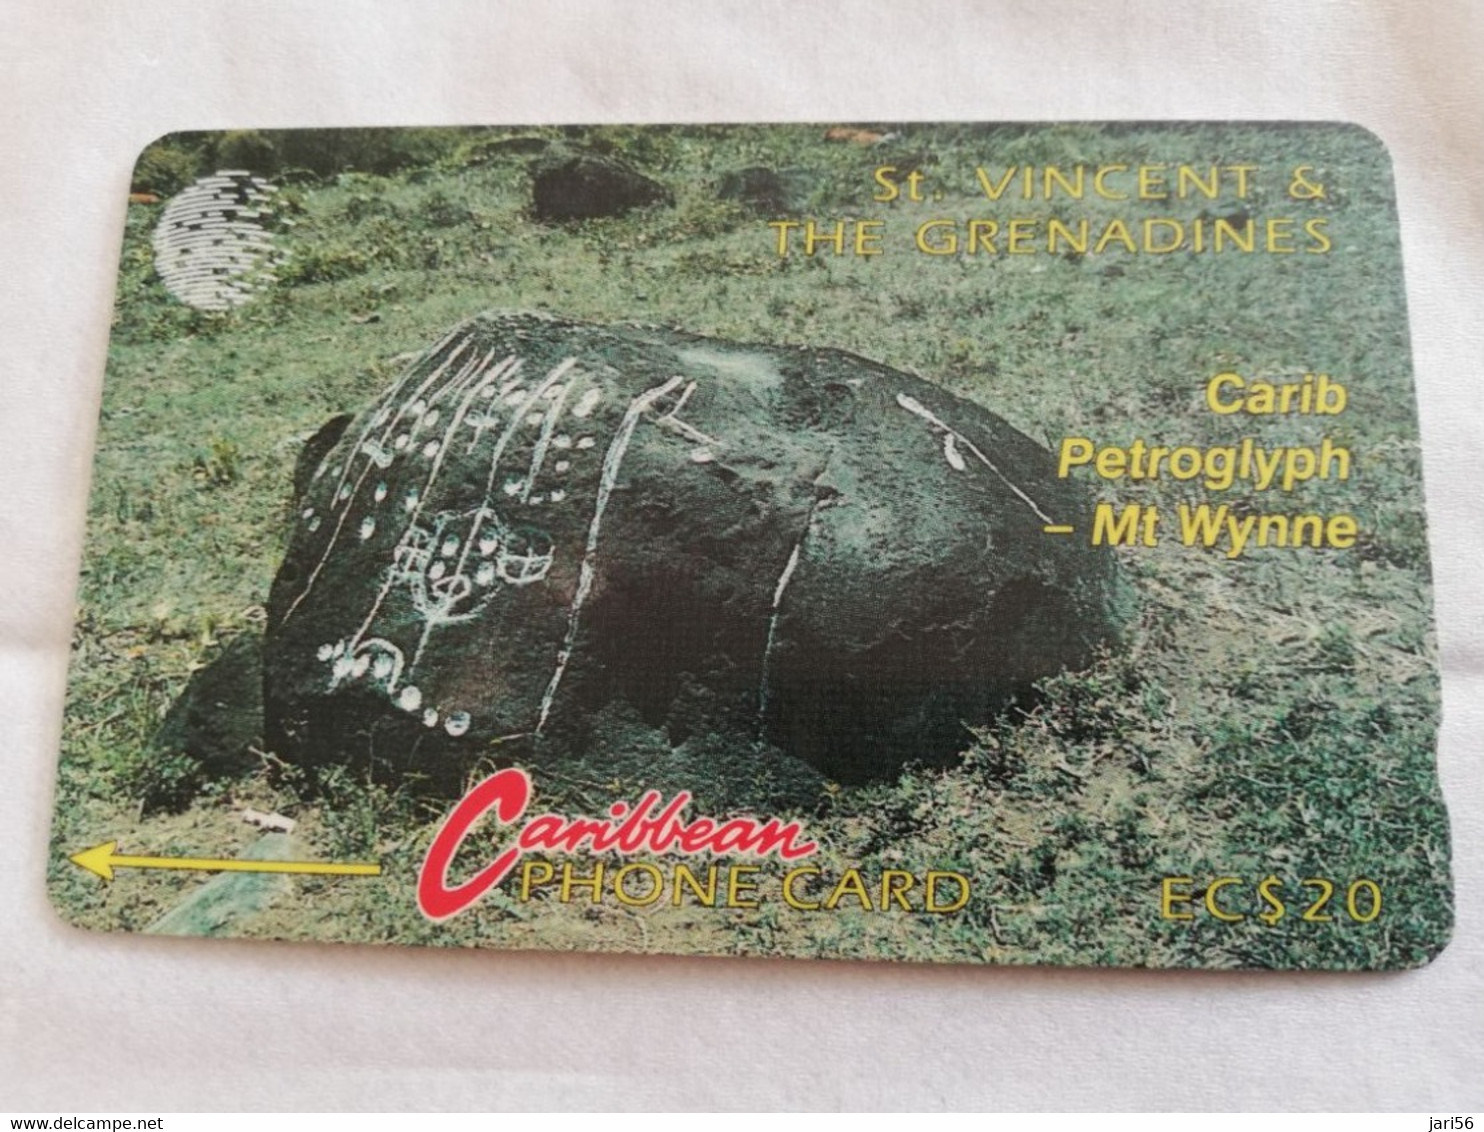 ST VINCENT & GRENADINES  GPT CARD   $ 20,-  5CSVB  CARIB PETROGLYPH     C&W    Fine Used  Card  **5644 ** - Saint-Vincent-et-les-Grenadines